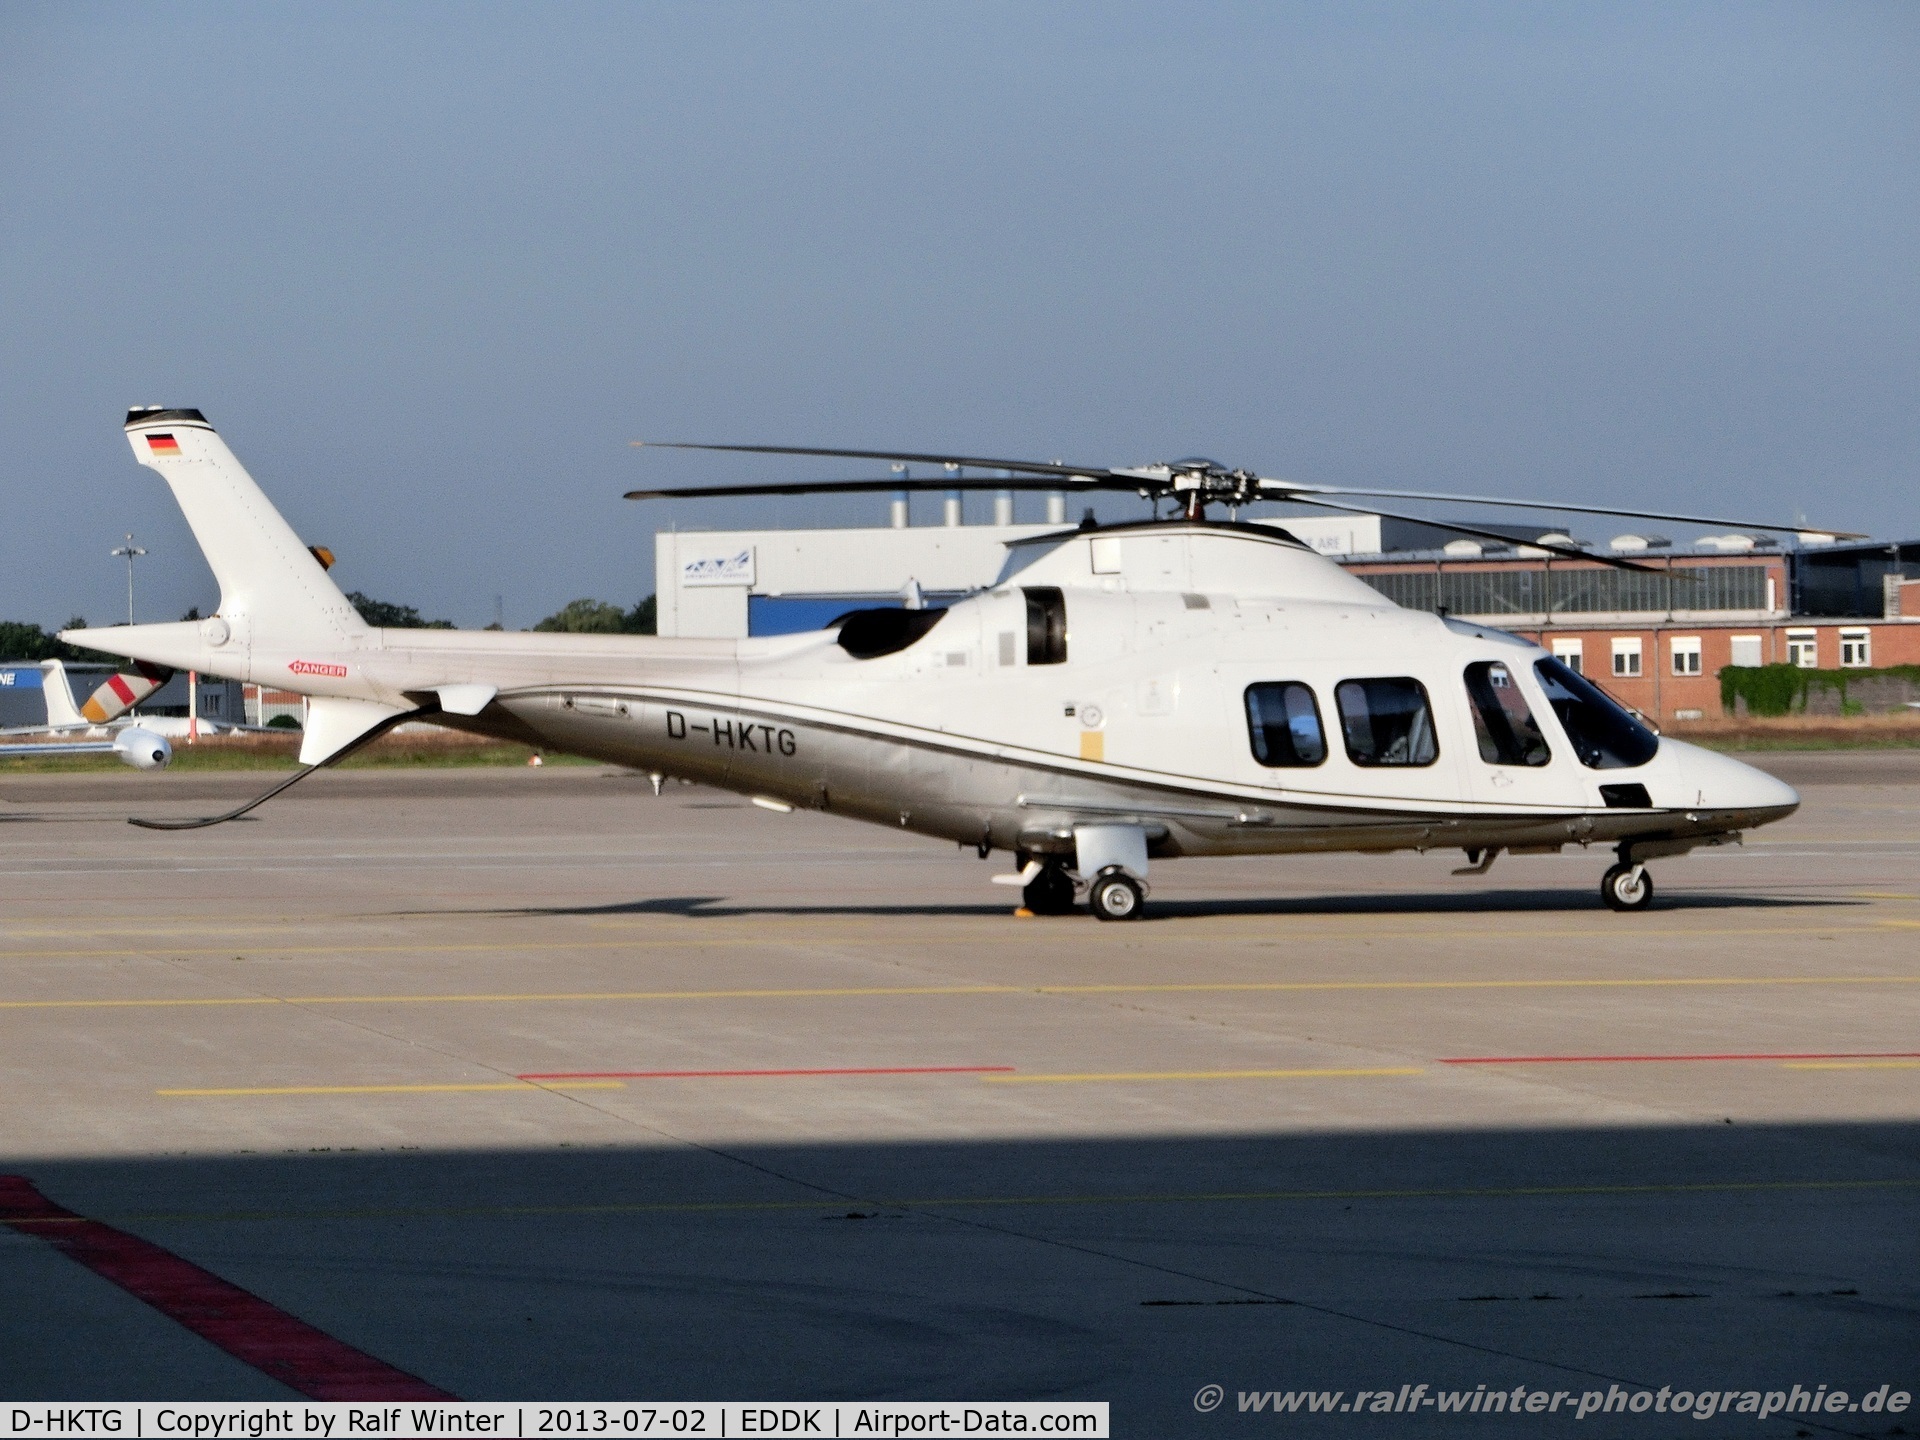 D-HKTG, 2007 Agusta A-109S Grand C/N 22047, Agusta A-109S Grand - Privat - D-HKTG - 02.07.2013 - CGN